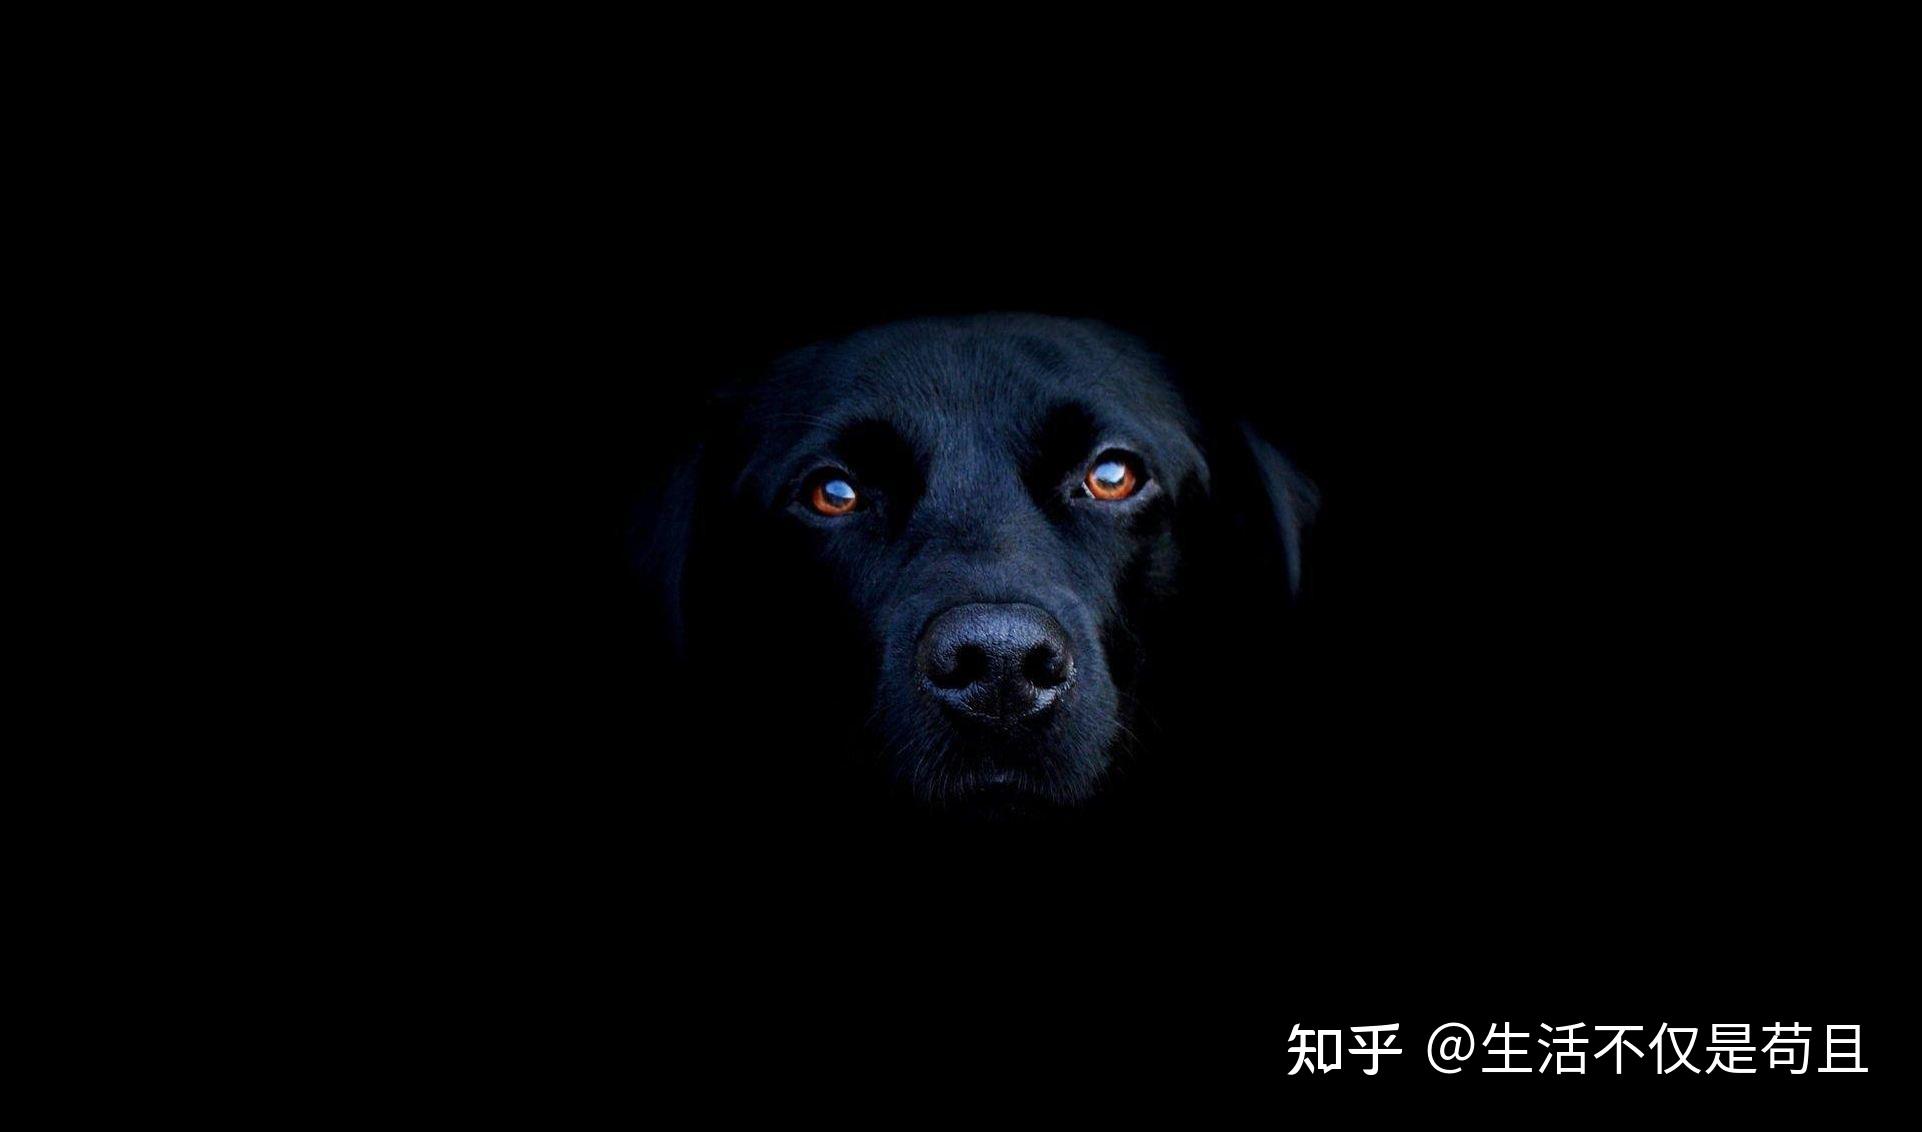 黑狗在晚上那叫一个可怕,关灯后,稍不注意看到两只发光的眼睛,就算养